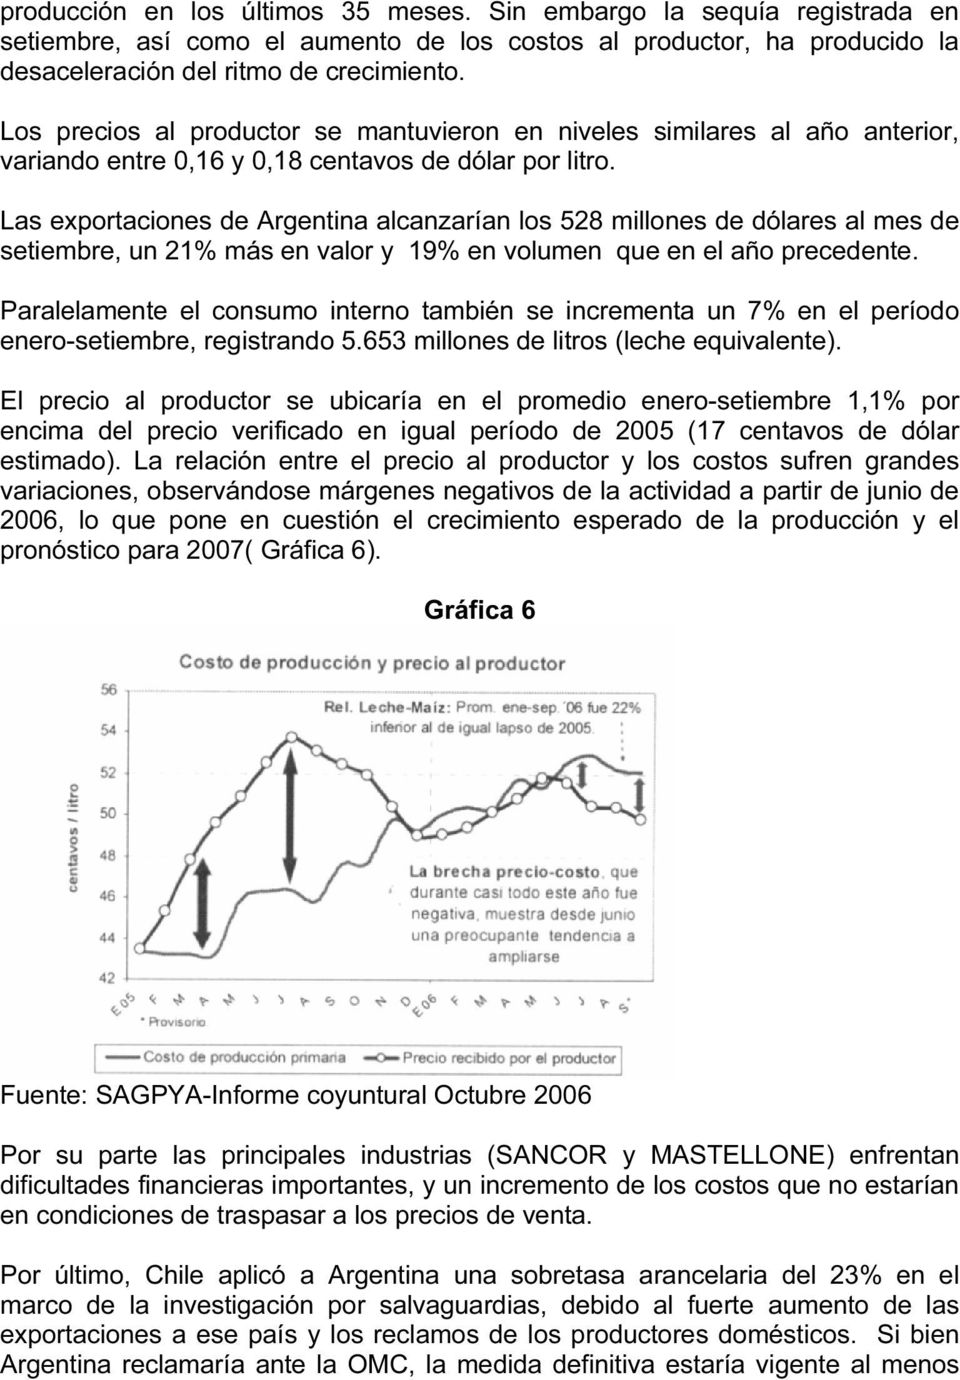 Las exportaciones de Argentina alcanzarían los 528 millones de dólares al mes de setiembre, un 21% más en valor y 19% en volumen que en el año precedente.